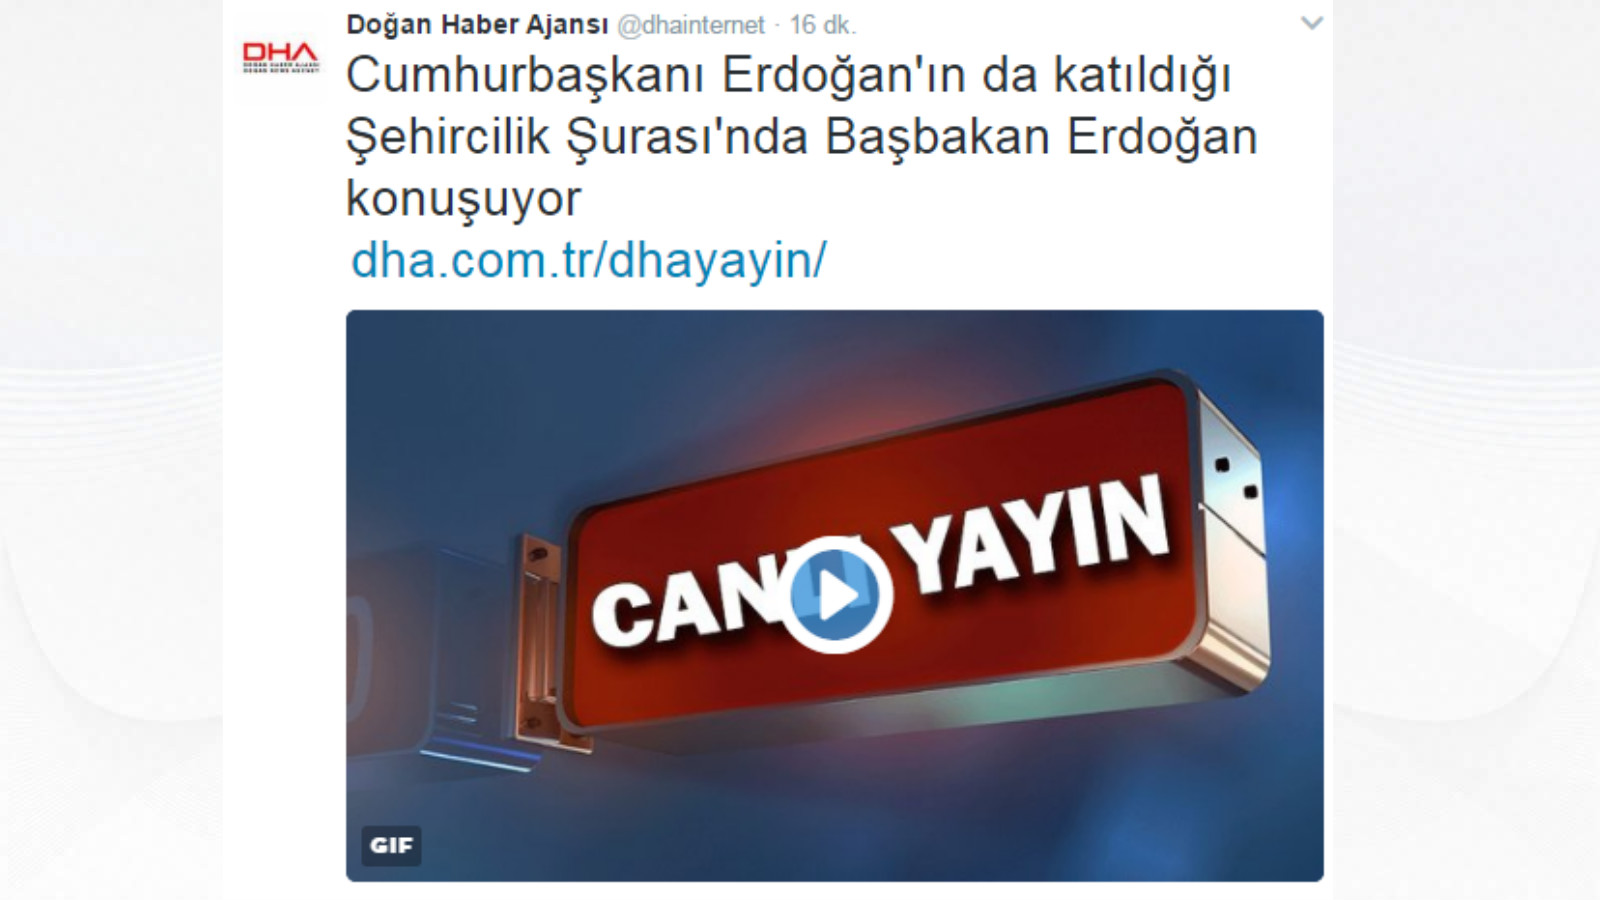 DHA 'iki başlılığı' kaldırdı: Başbakan da Erdoğan oldu